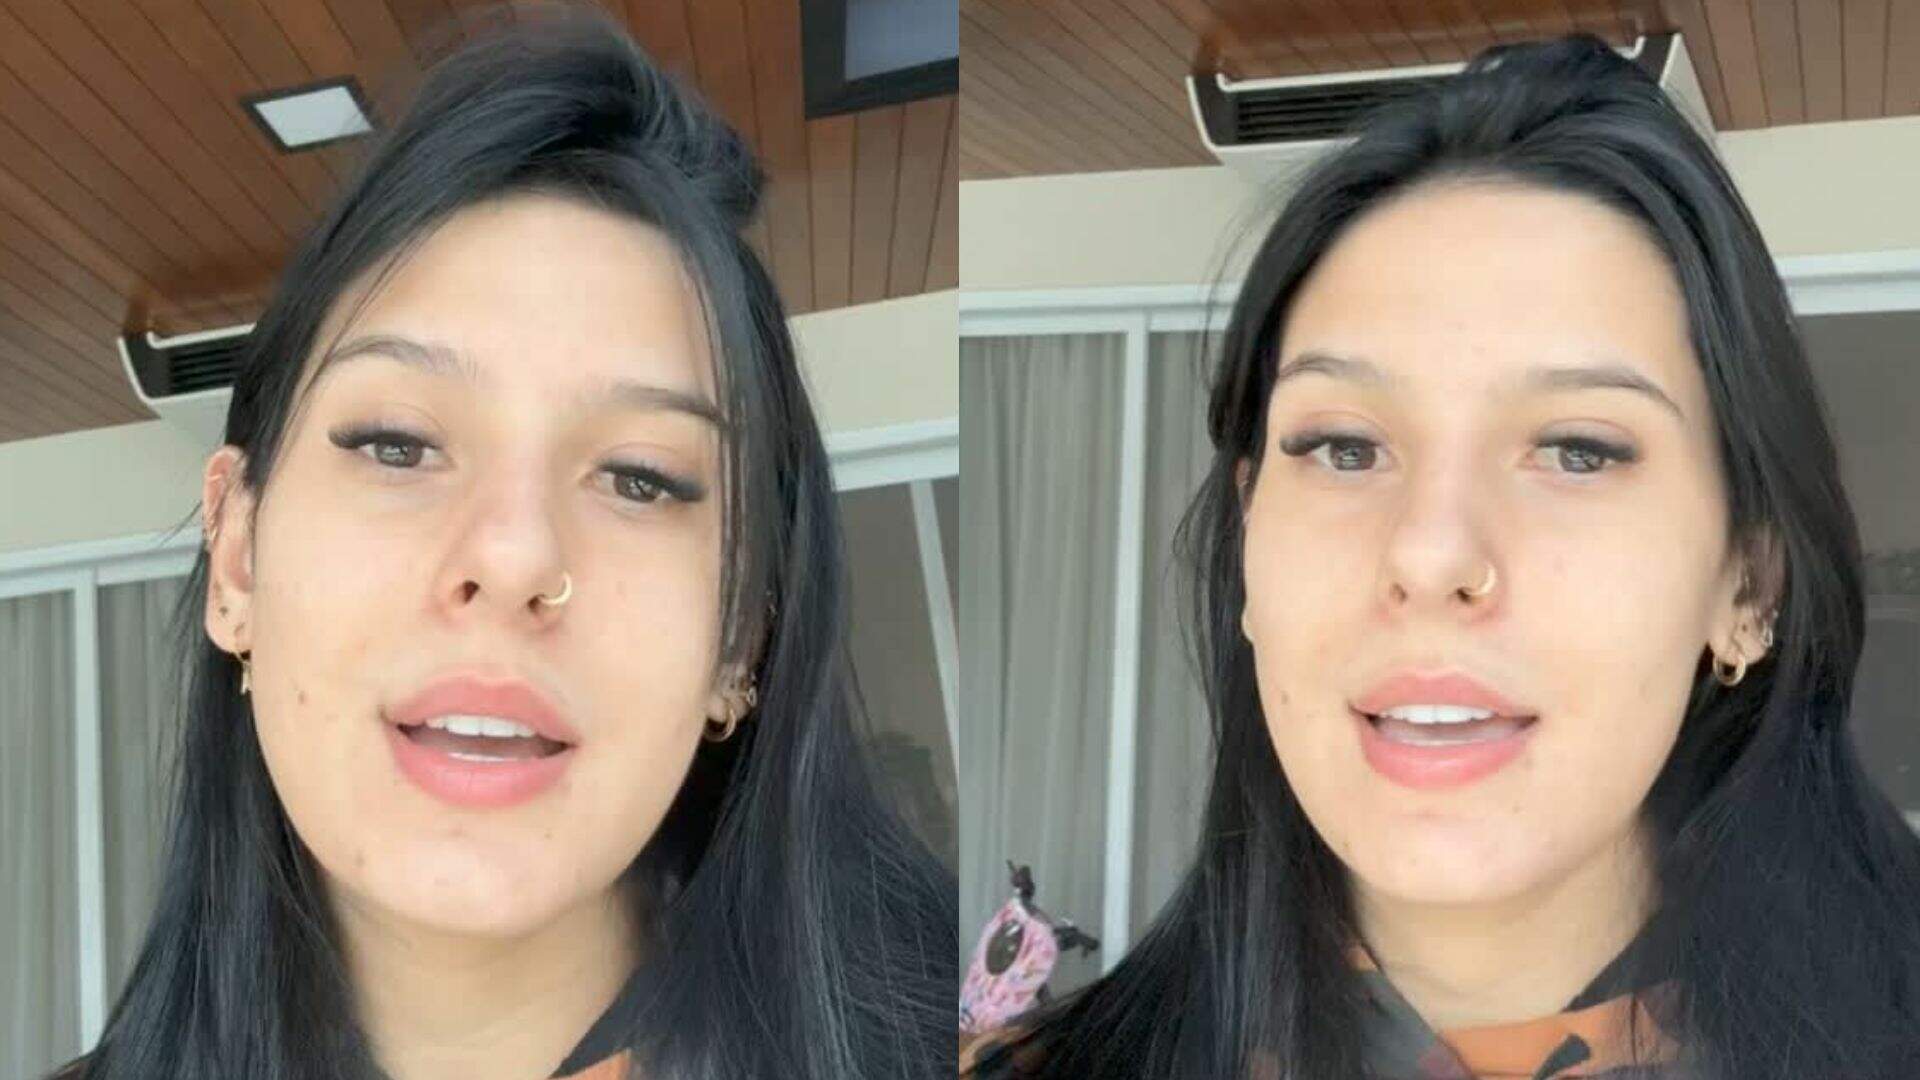 Ana Castela fala sobre autoestima ao mostrar antes e depois de tratamento para espinhas; veja a evolução - Metropolitana FM